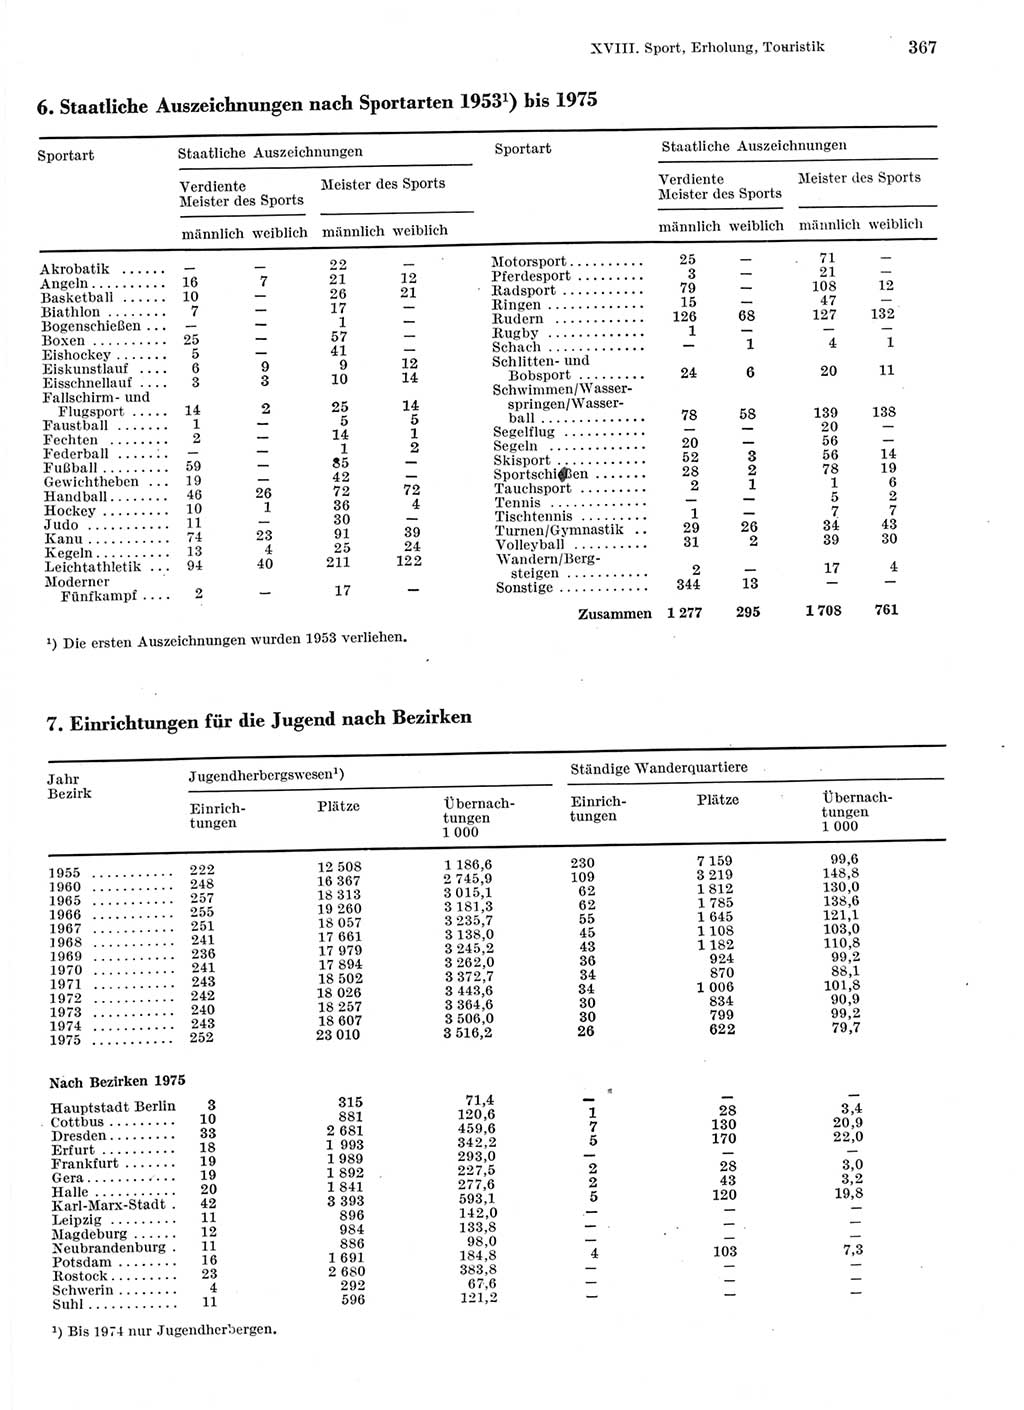 Statistisches Jahrbuch der Deutschen Demokratischen Republik (DDR) 1976, Seite 367 (Stat. Jb. DDR 1976, S. 367)